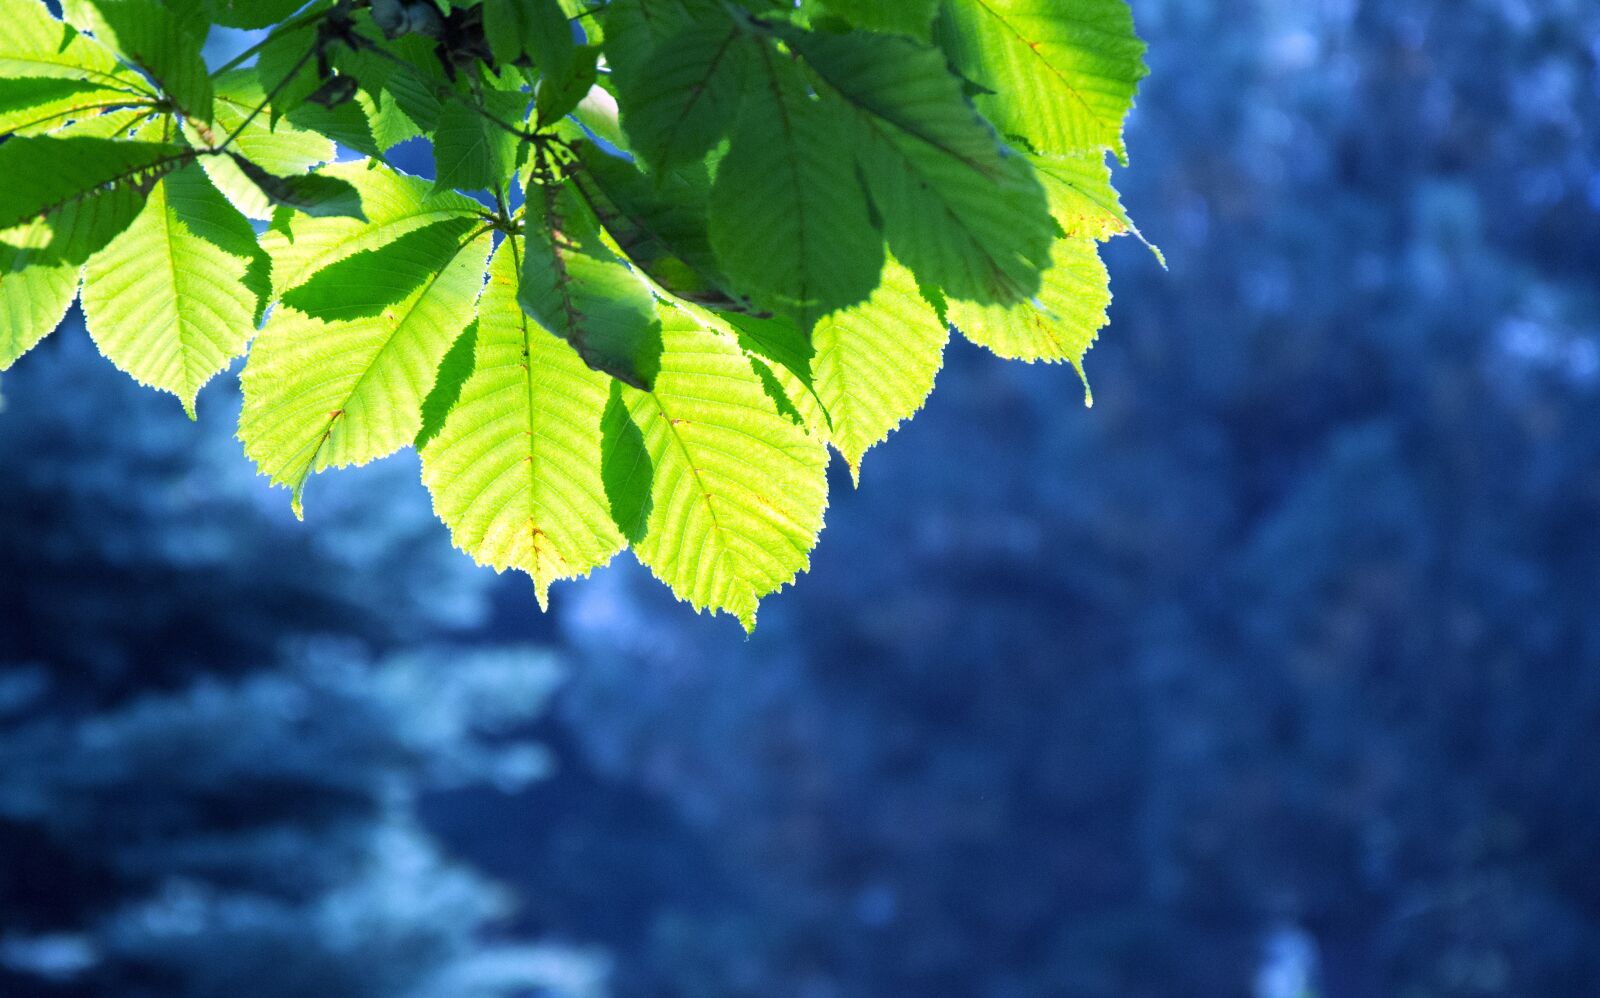 Nikon D3100 sample photo. зеленые листья, лучи солнца, голубые ели photography